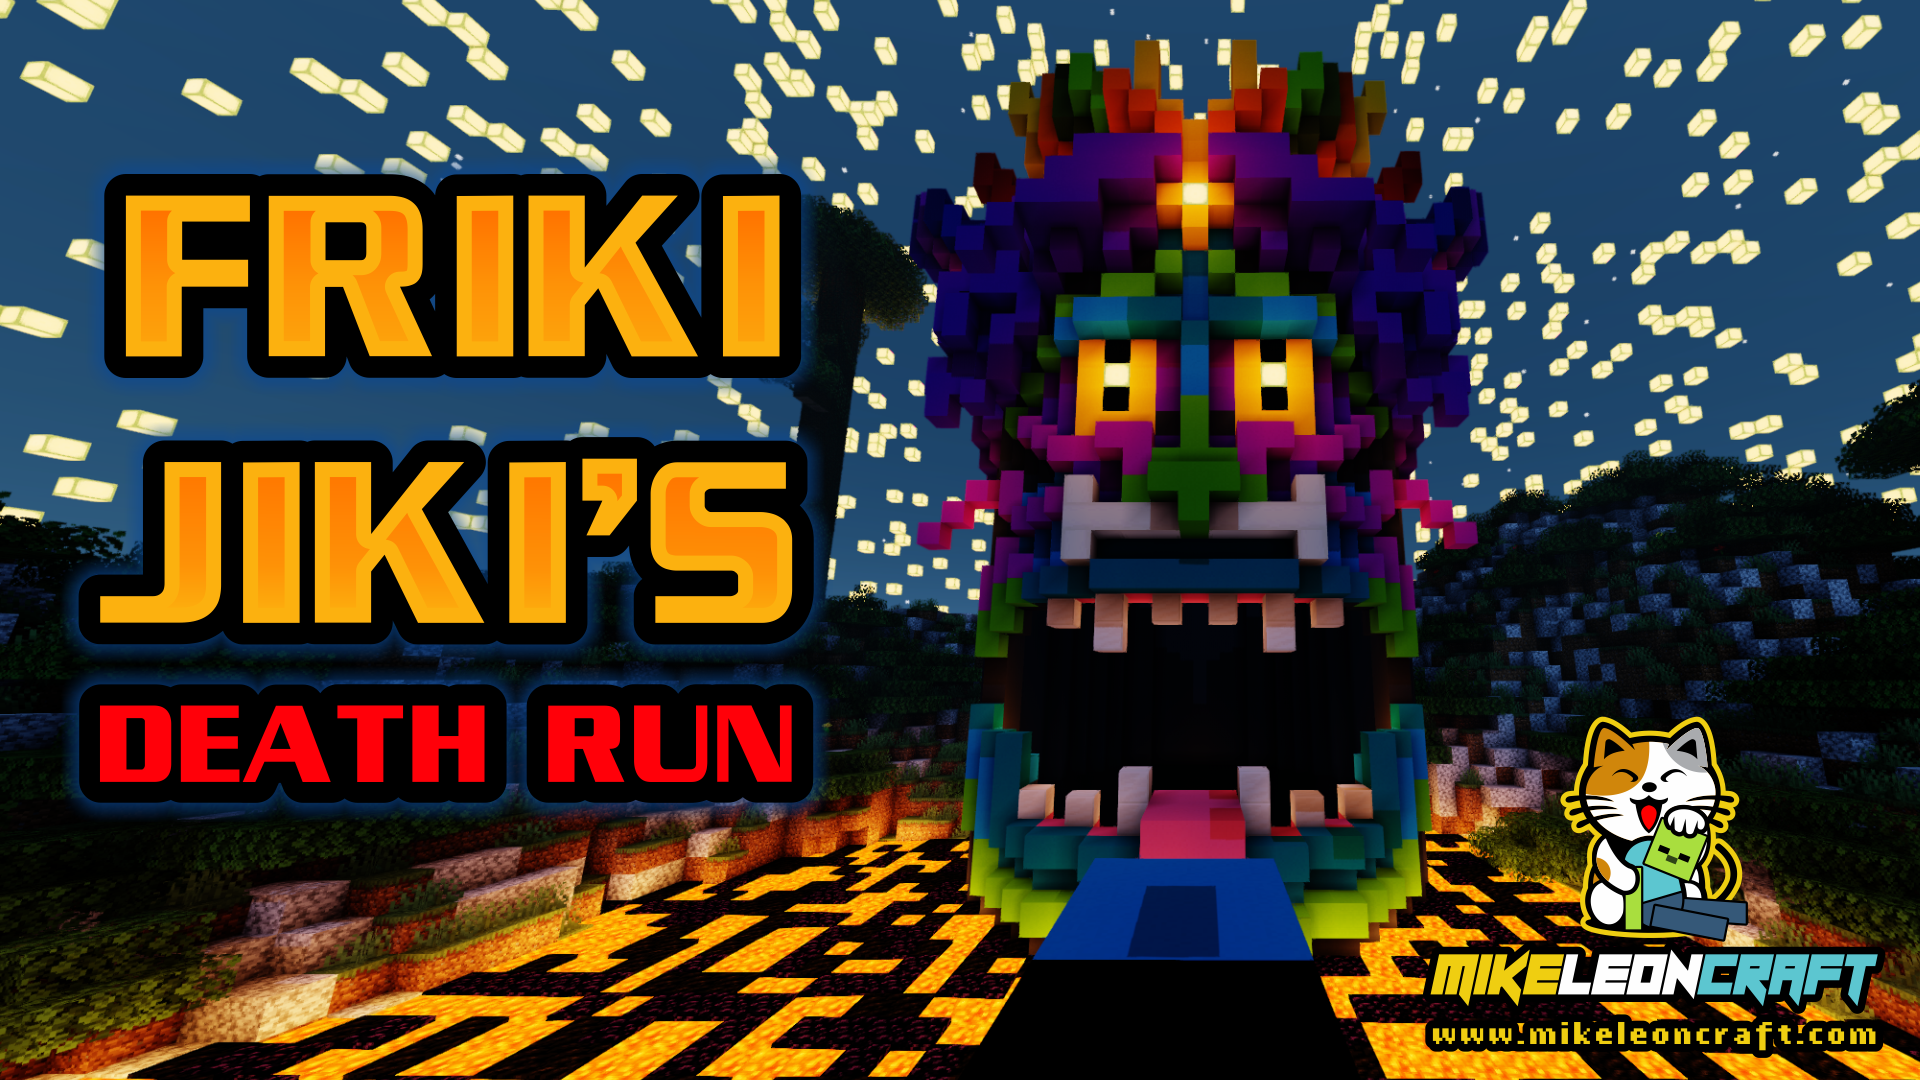 Скачать Friki Jiki's Death Run для Minecraft 1.15.2